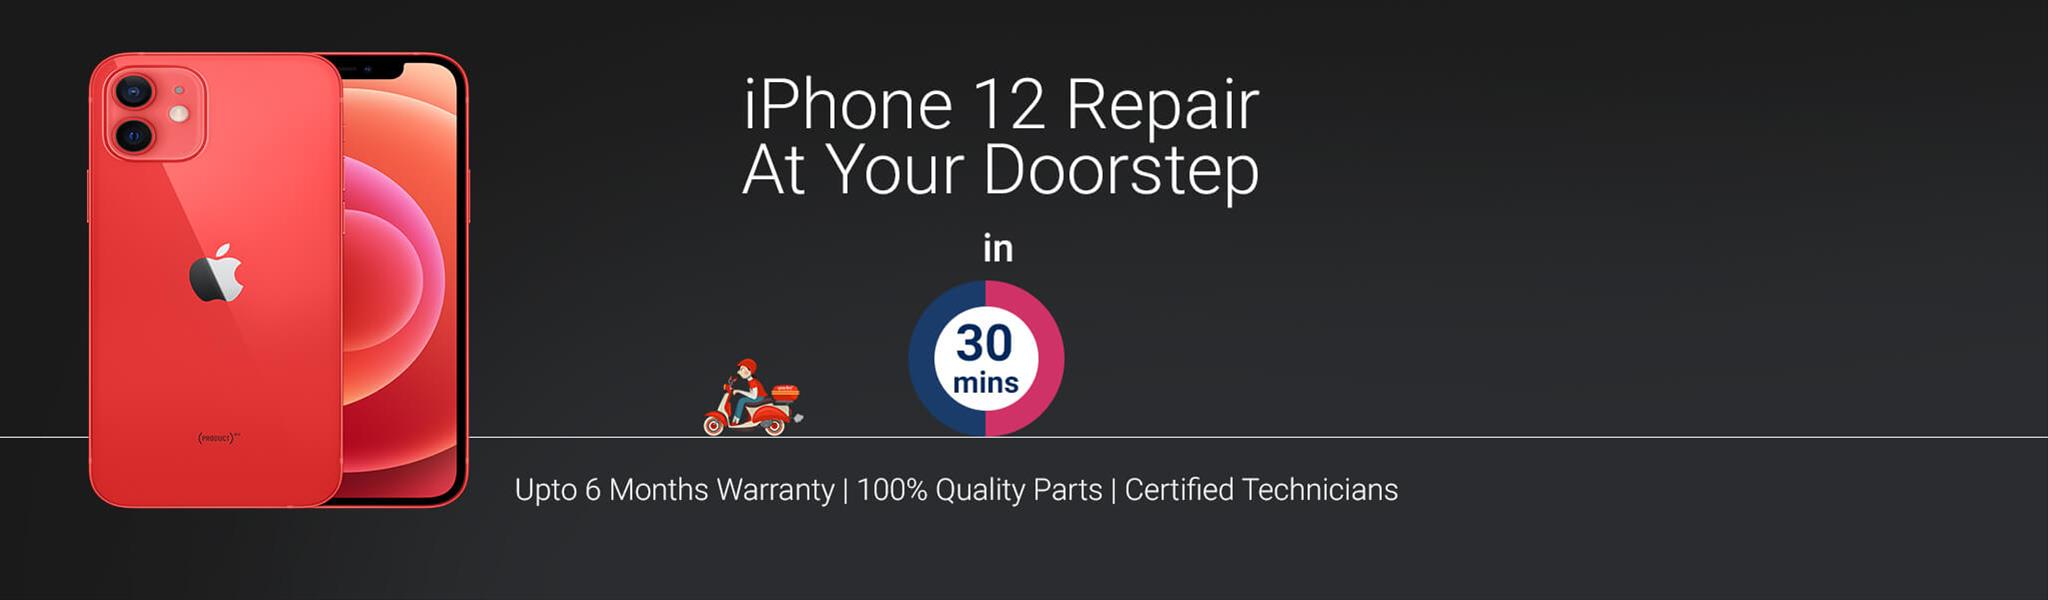 iphone-12-repair.jpg